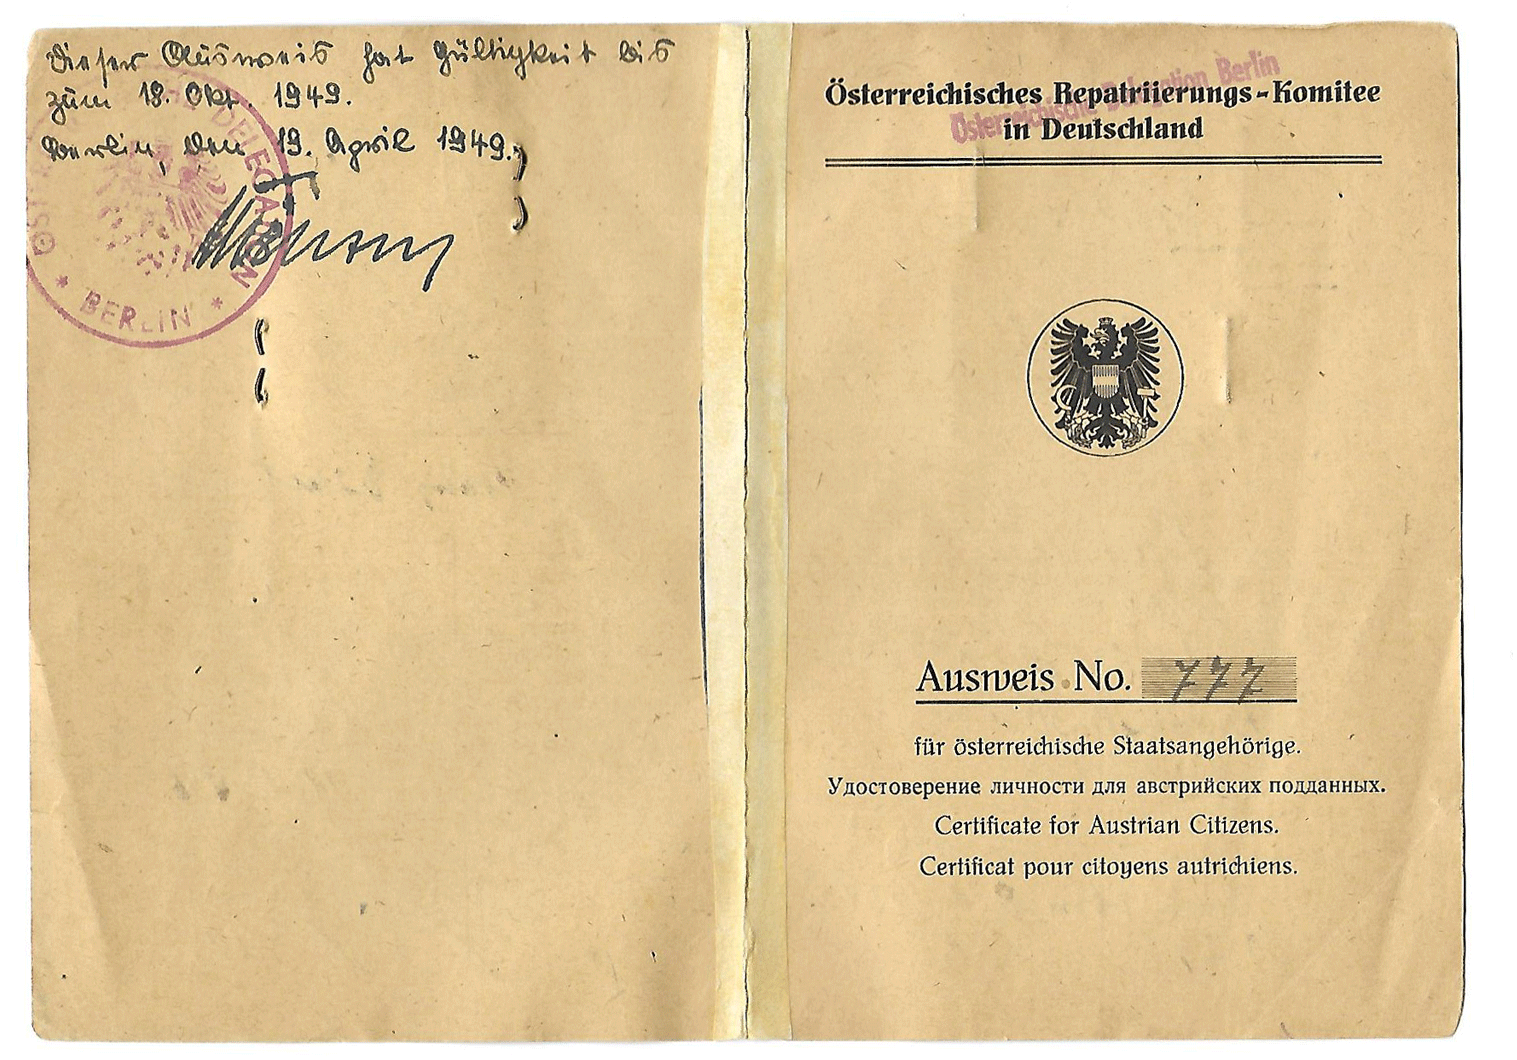 1945 Austrian Repatriation Committee in Germany